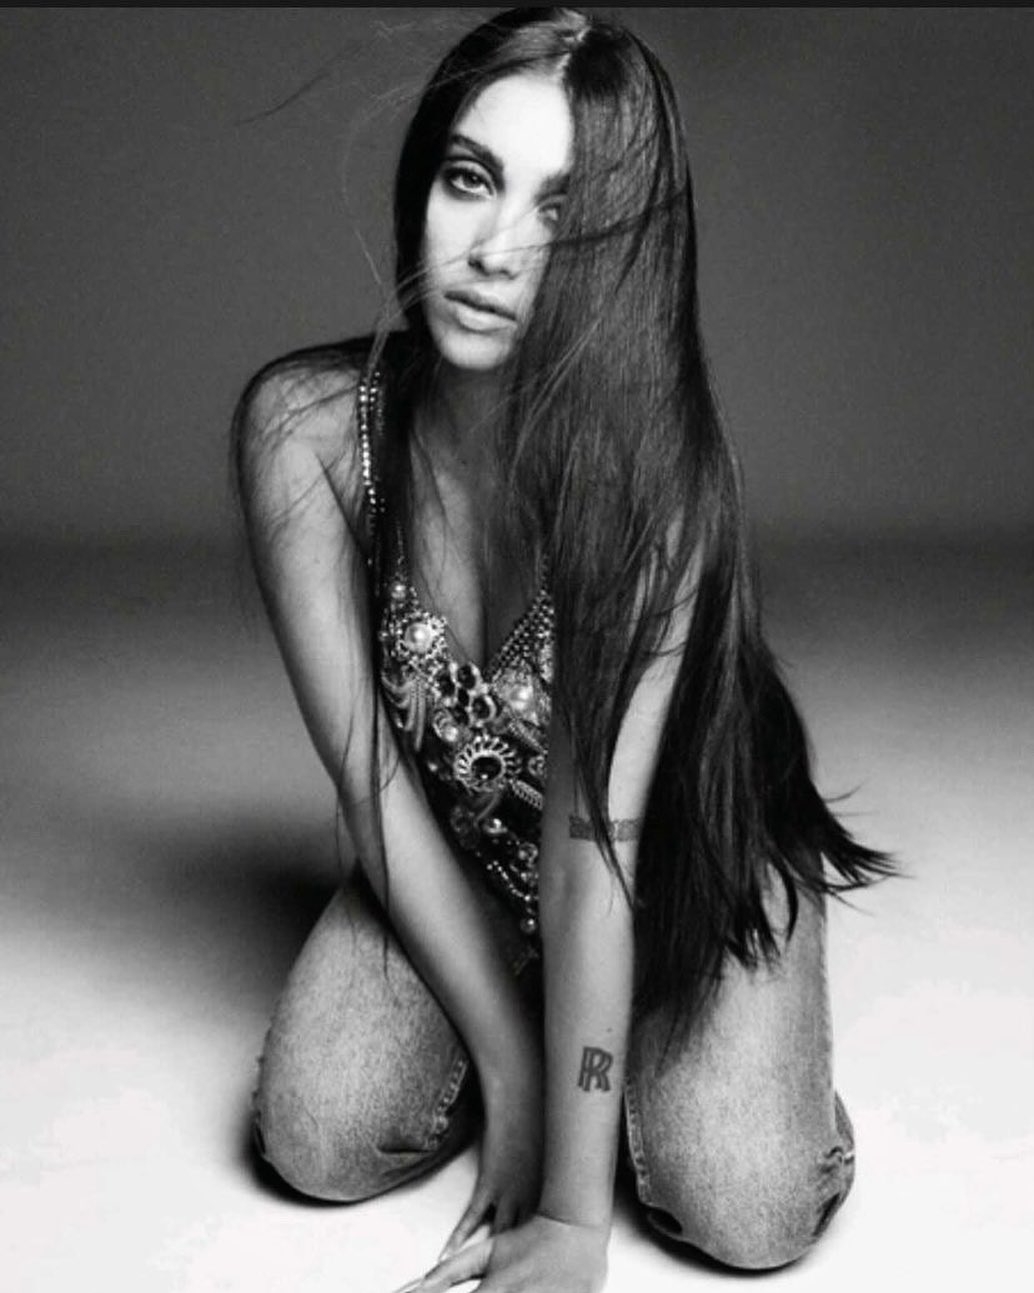 Дочь Мадонны Лурдес Леон снялась для Vogue (ФОТО) - фото №2